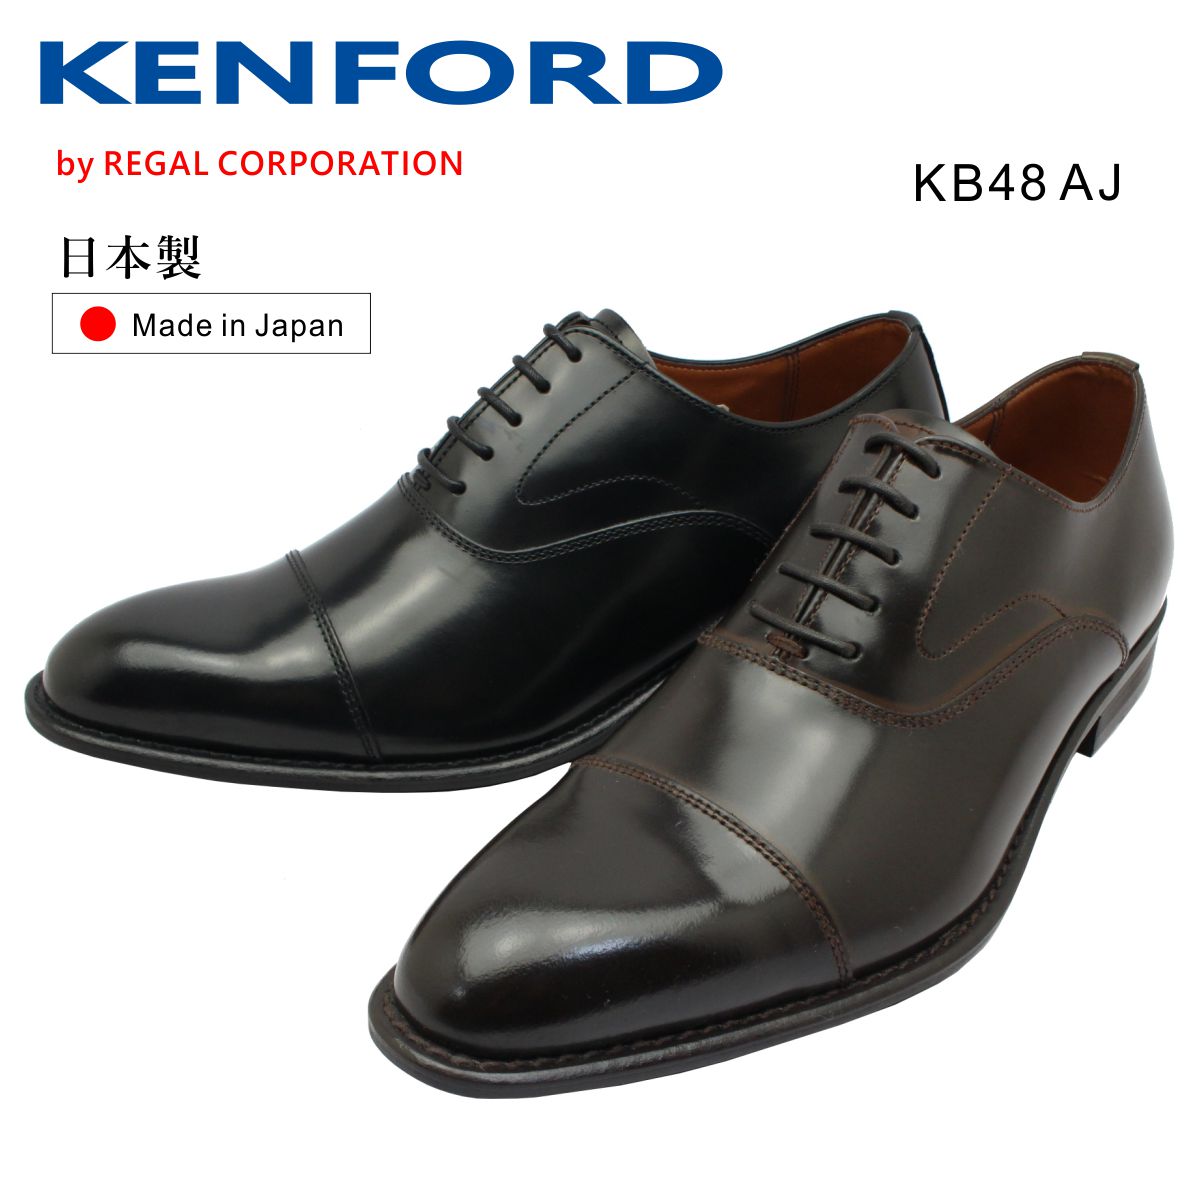 KENFORD ケンフォード メンズ KB48 AJ 3E ストレートチップ ビジネスシューズ 紳士靴 リーガル 日本製 ブラック ダークブラウン